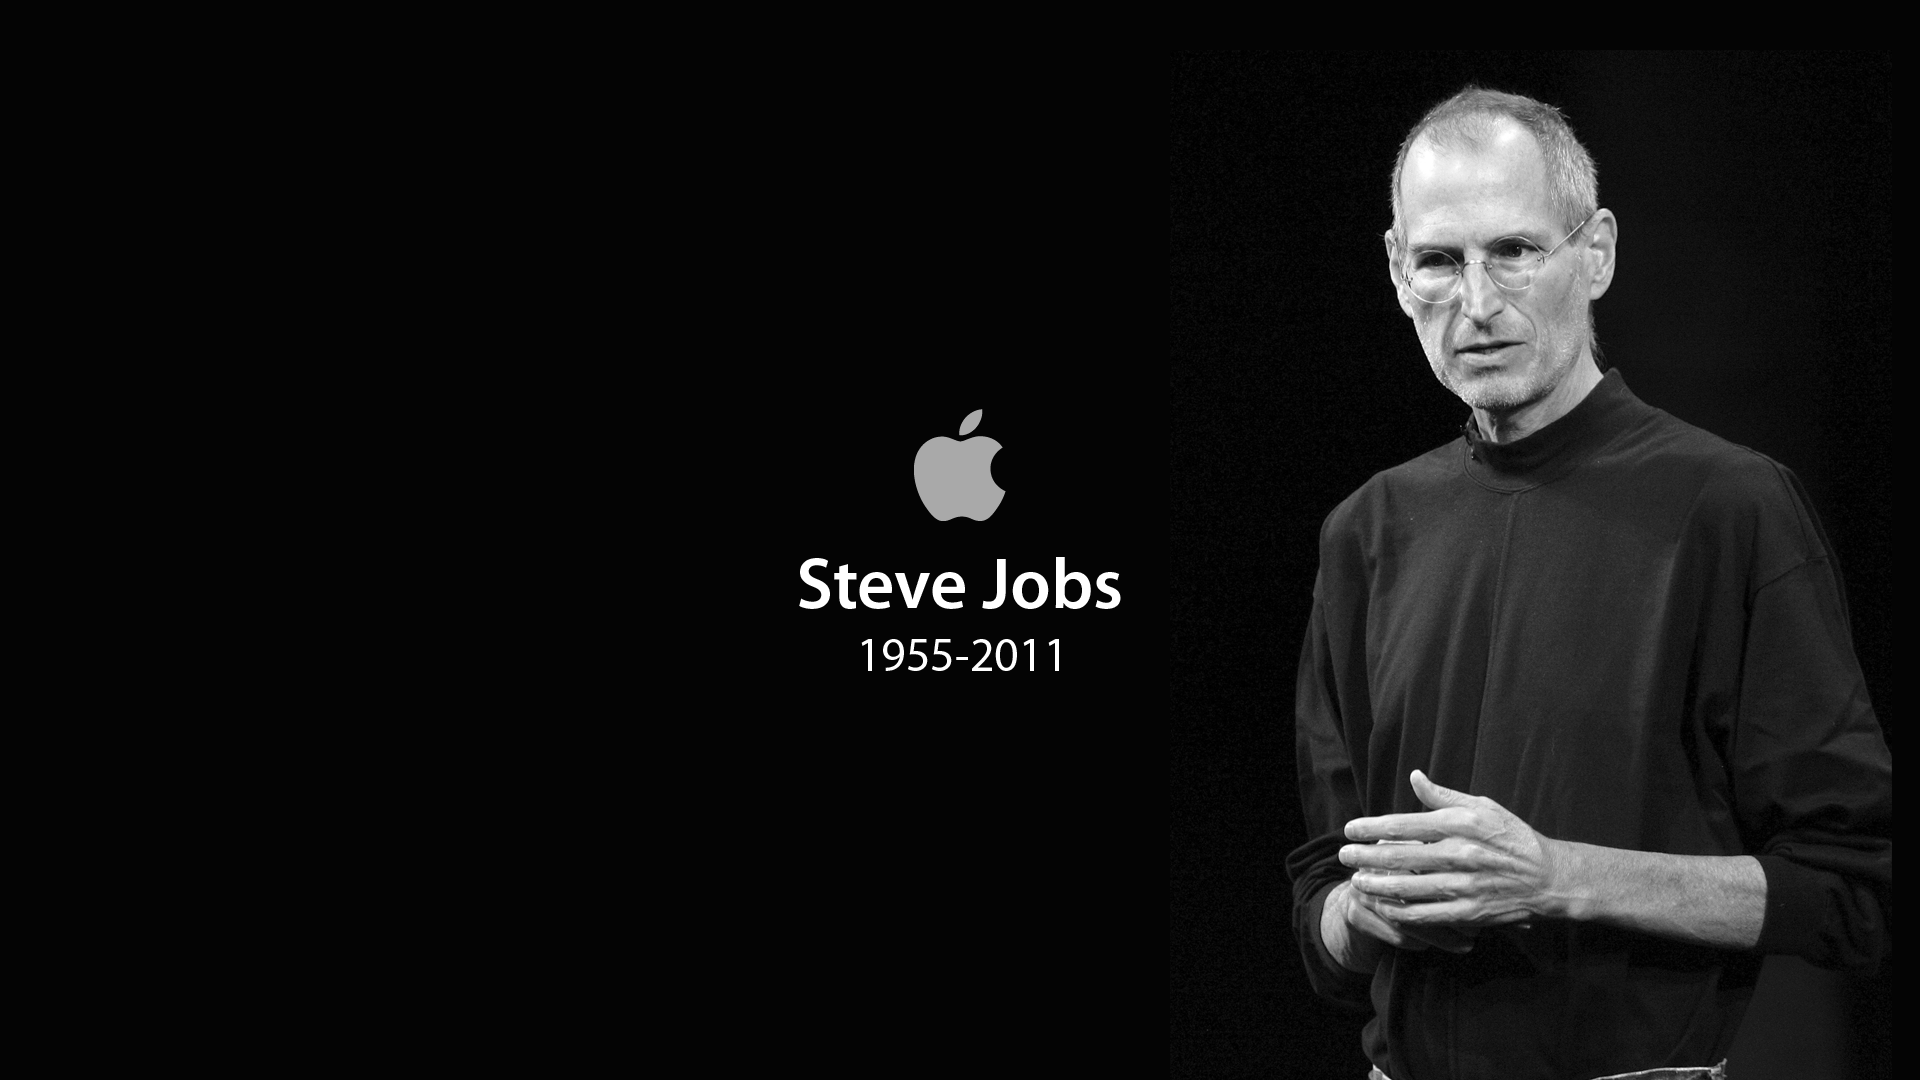 Steve Jobs High Definition Wallpaper